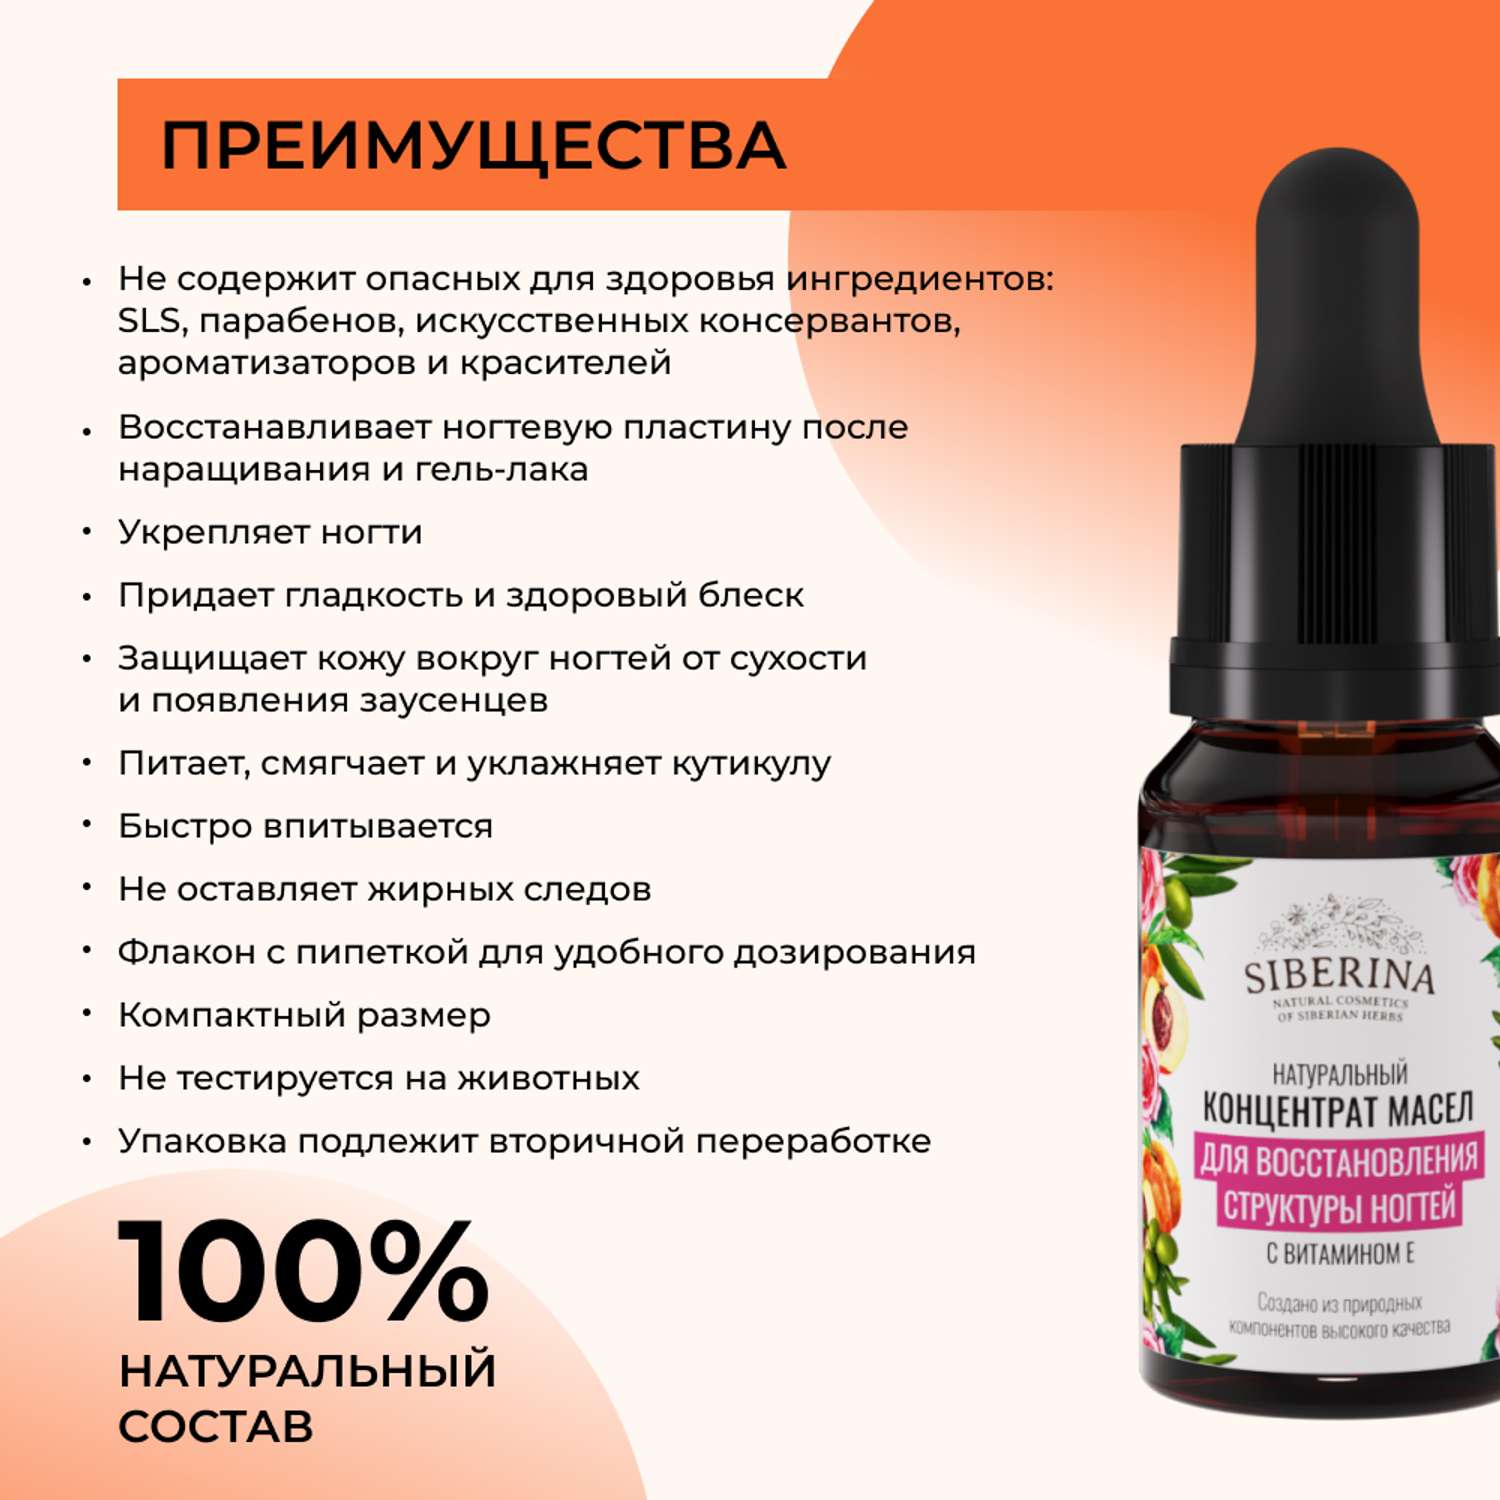 Концентрат масел Siberina натуральный «Для восстановления структуры ногтей» витамином Е 10 мл - фото 3